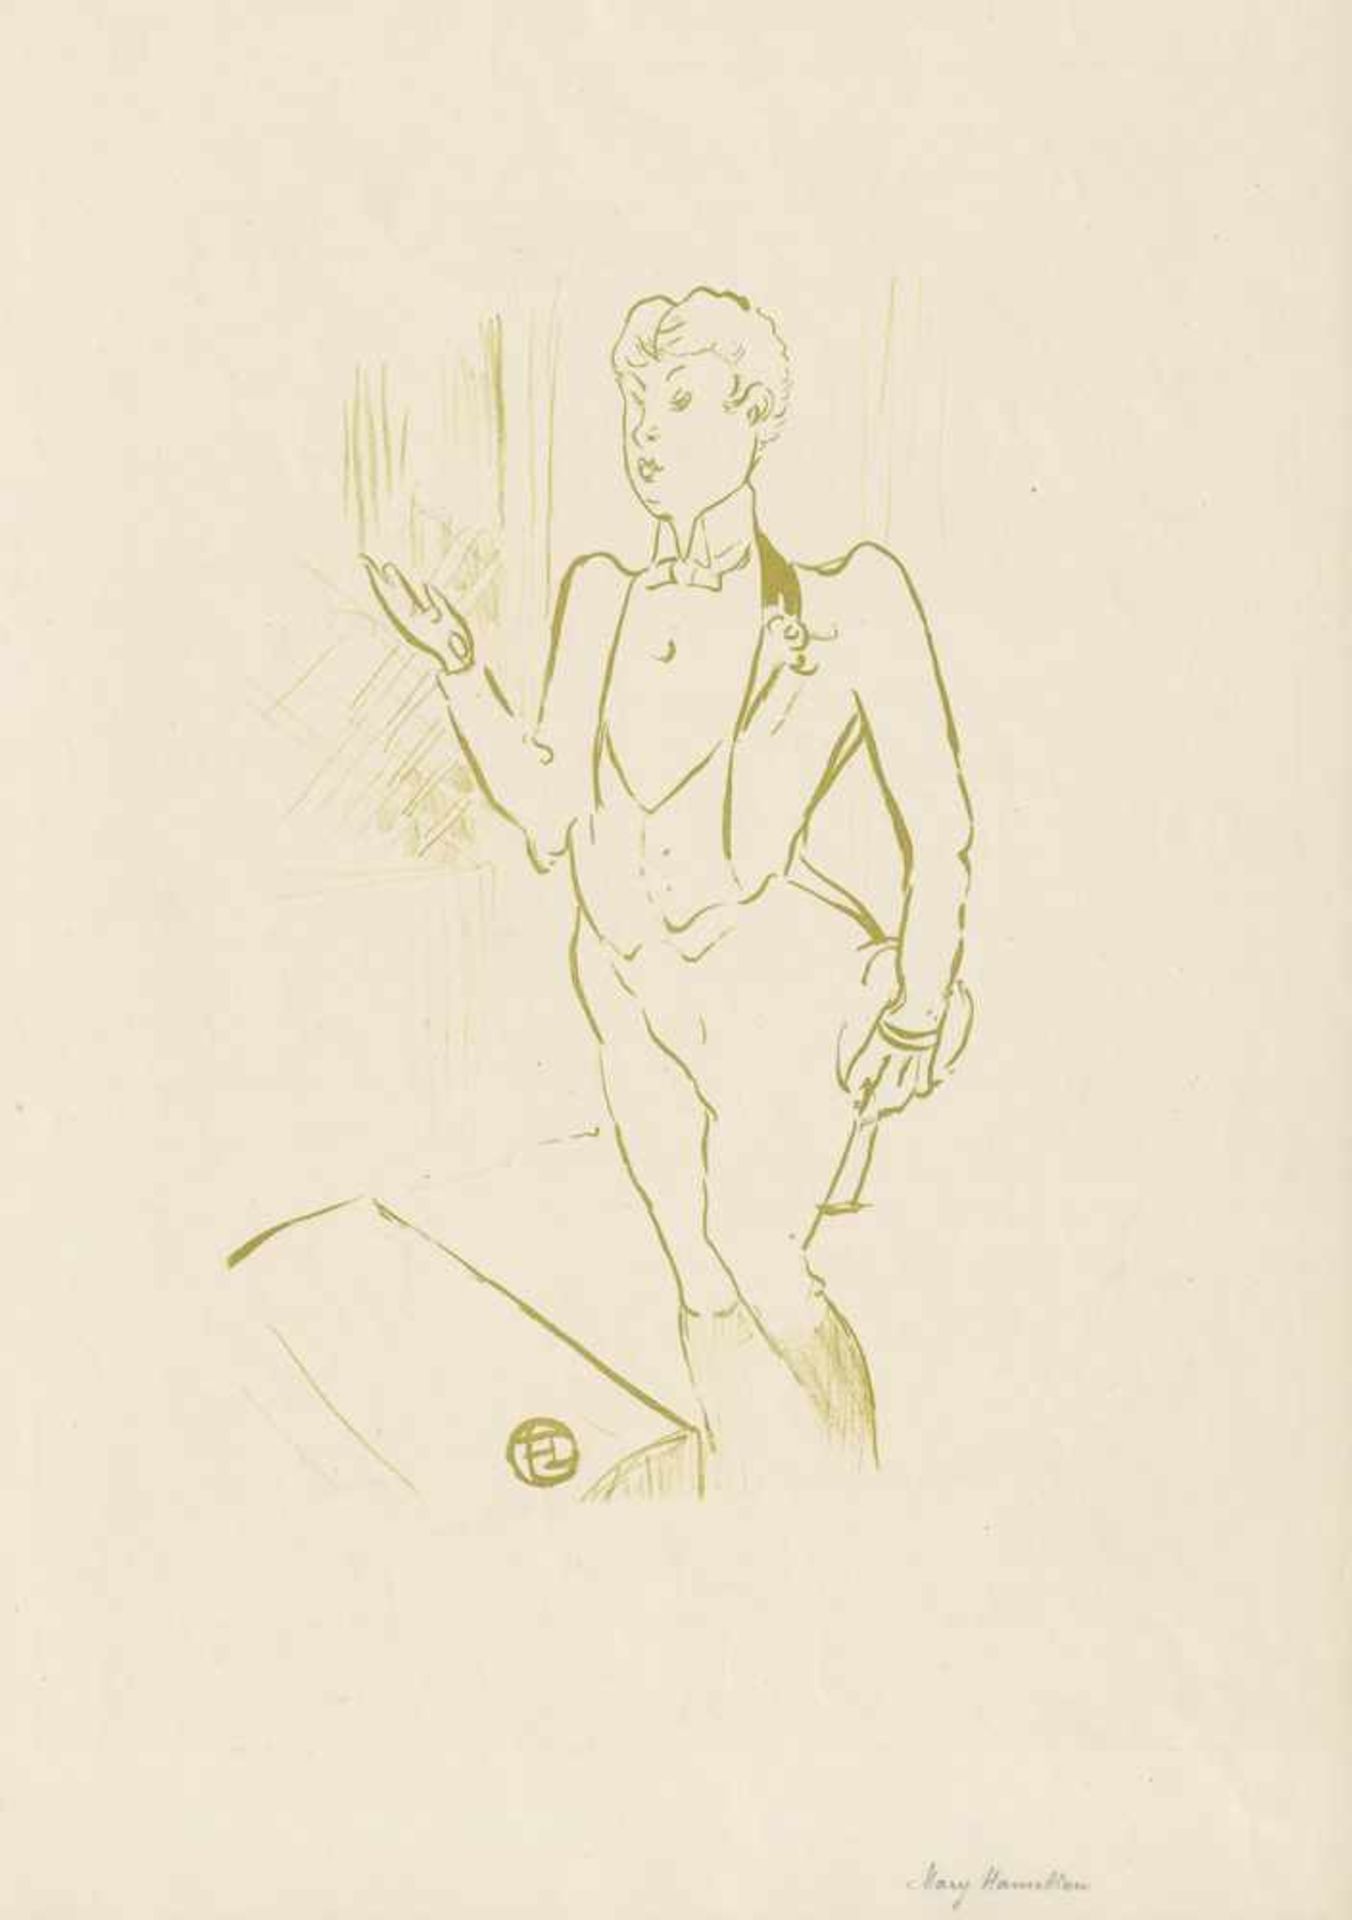 Toulouse-Lautrec, Henri de: Mary Hamilton